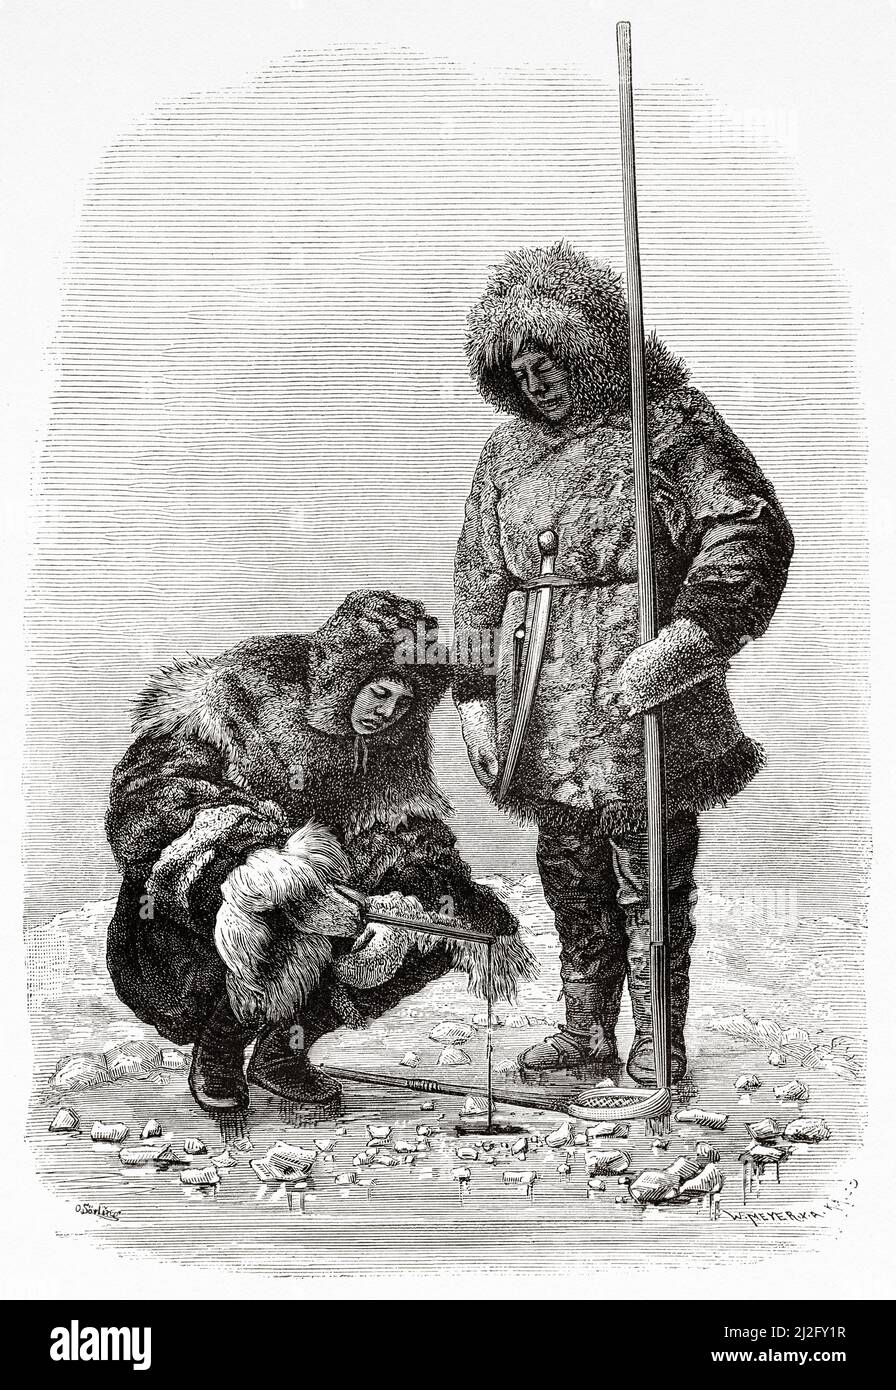 La gente di Chukchi pesca attraverso un buco nel ghiaccio. Artico, Russia. Il viaggio di la Vega attraverso l'Asia e l'Europa di Adolf Erik Nordenskiold 1879-1880, le Tour du Monde 1882 Foto Stock